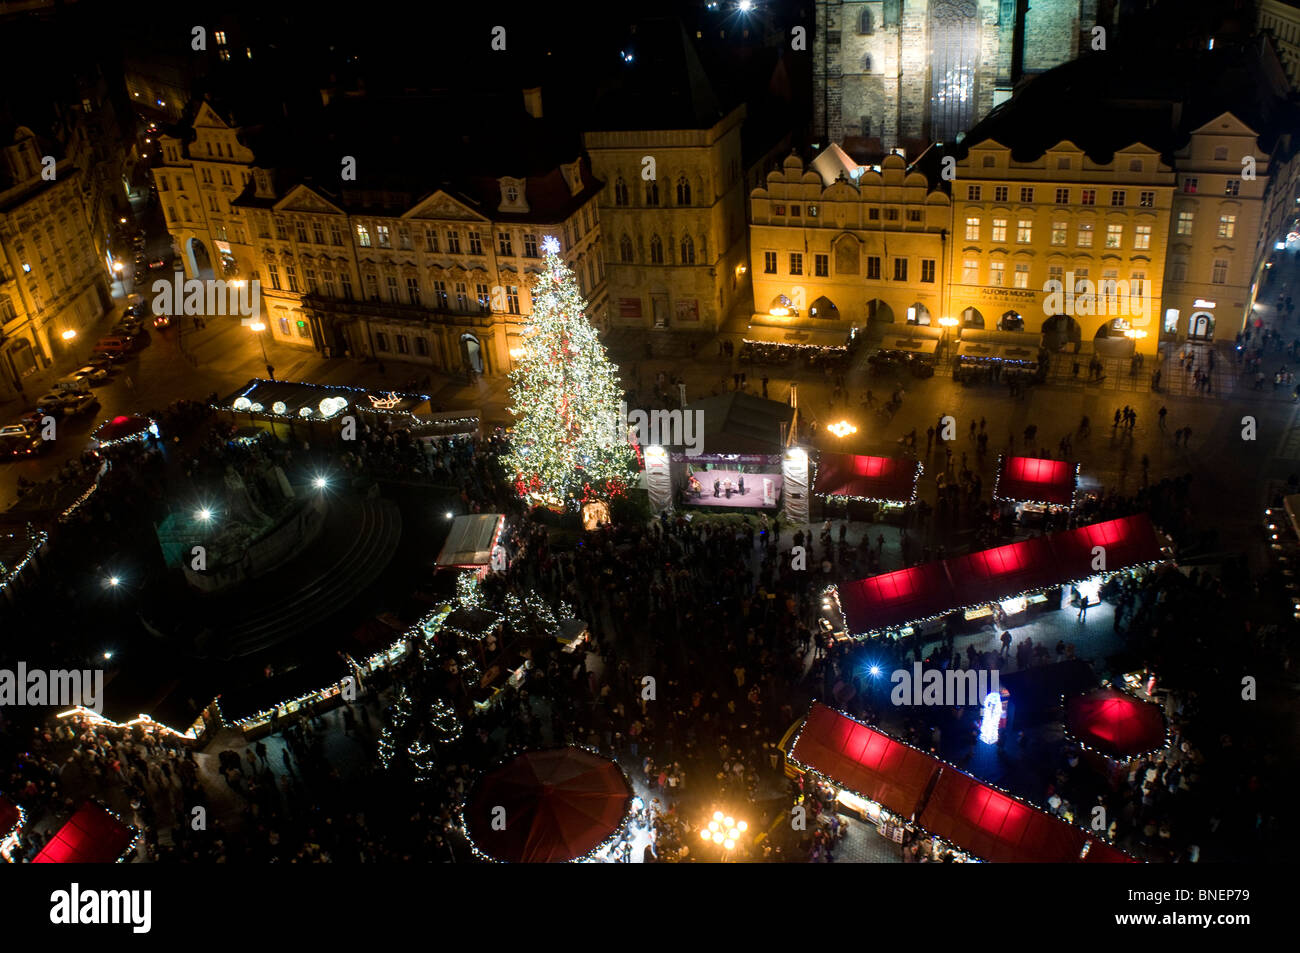 El mercado de Navidad en la plaza de la ciudad vieja, Stare Mesto. Praga REPÚBLICA CHECA Foto de stock